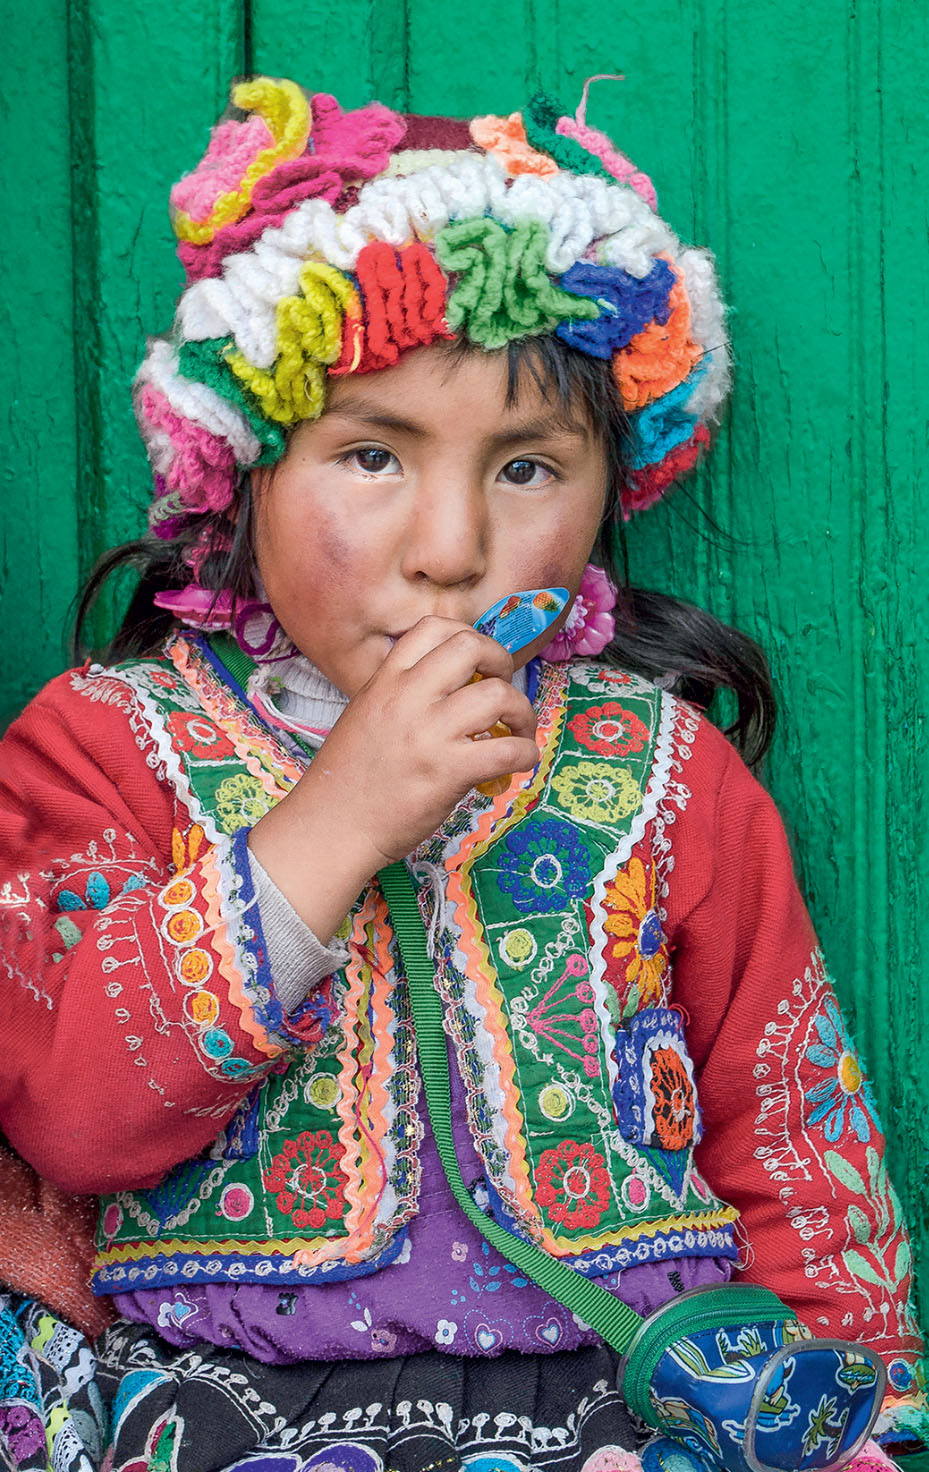 BEM NA FOTO: Menina cusquenha, no Peru